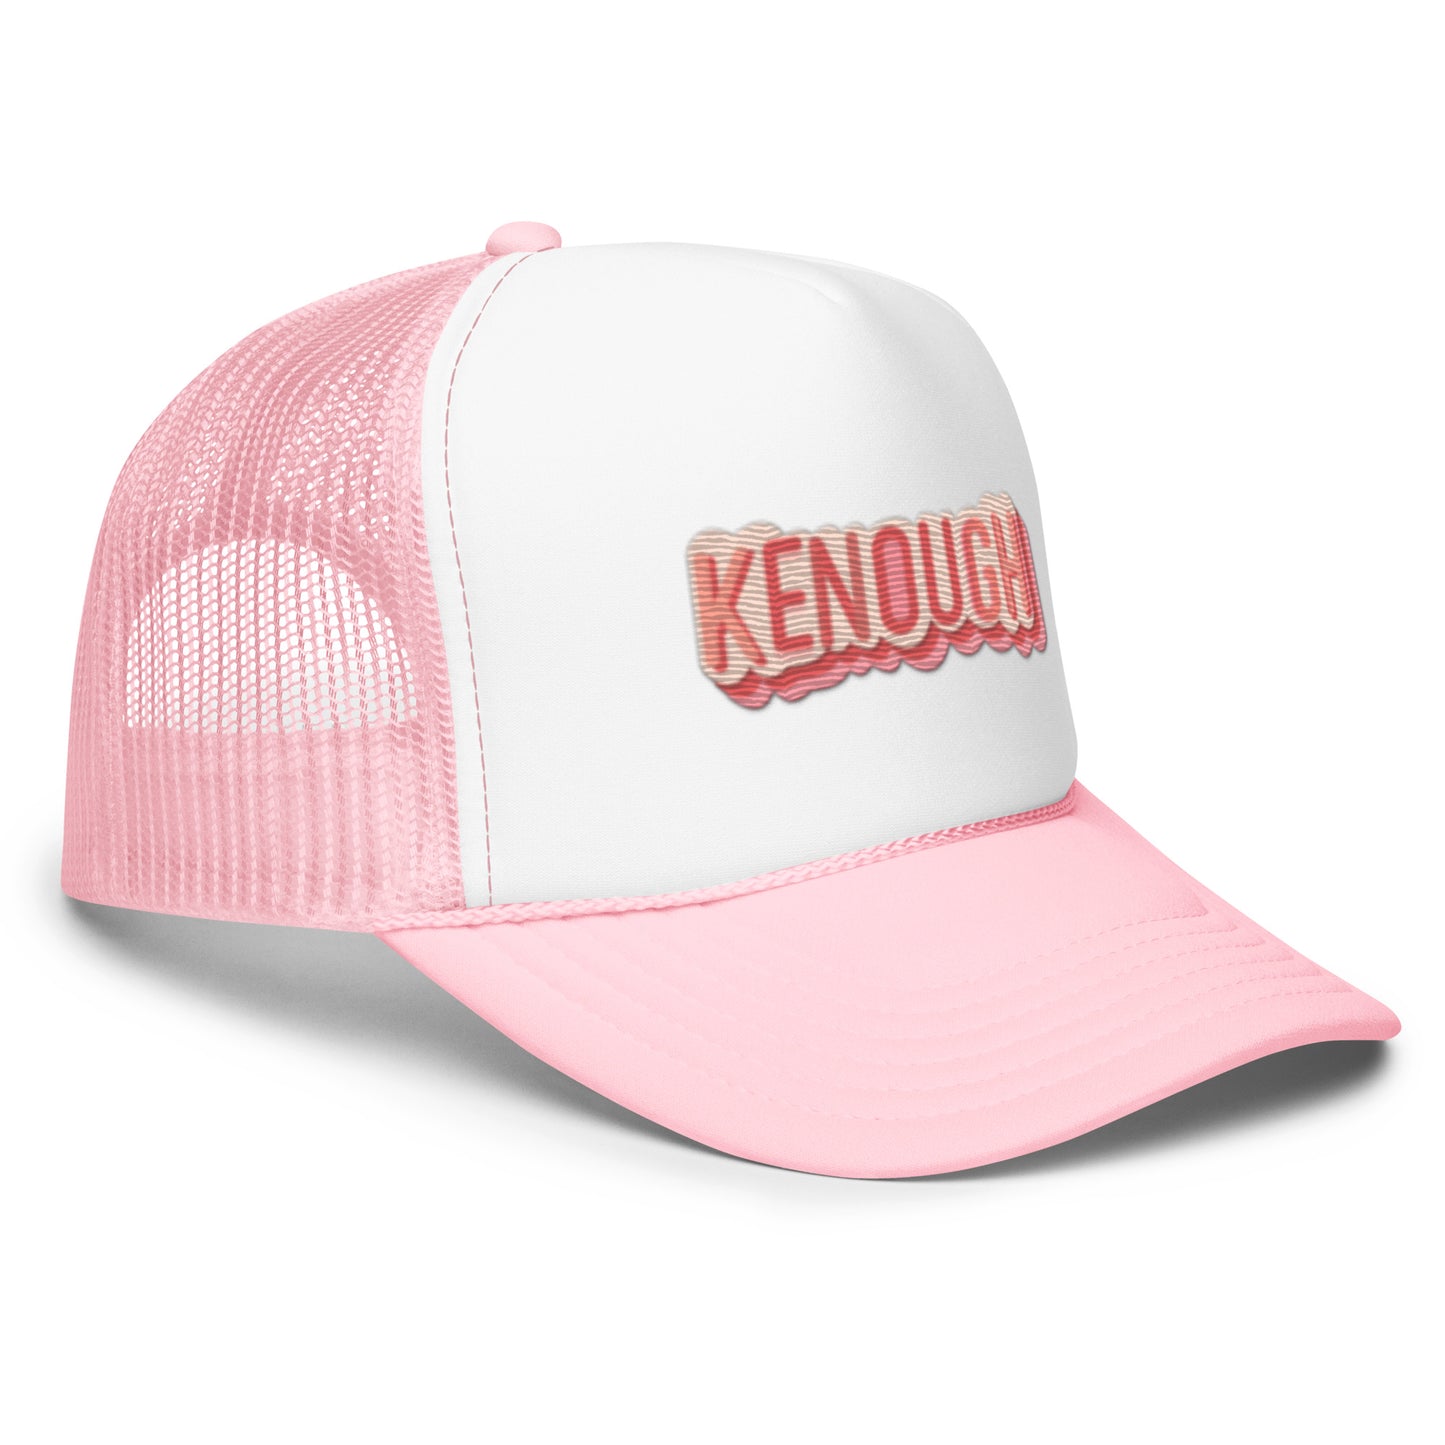 Kenough Foam trucker hat